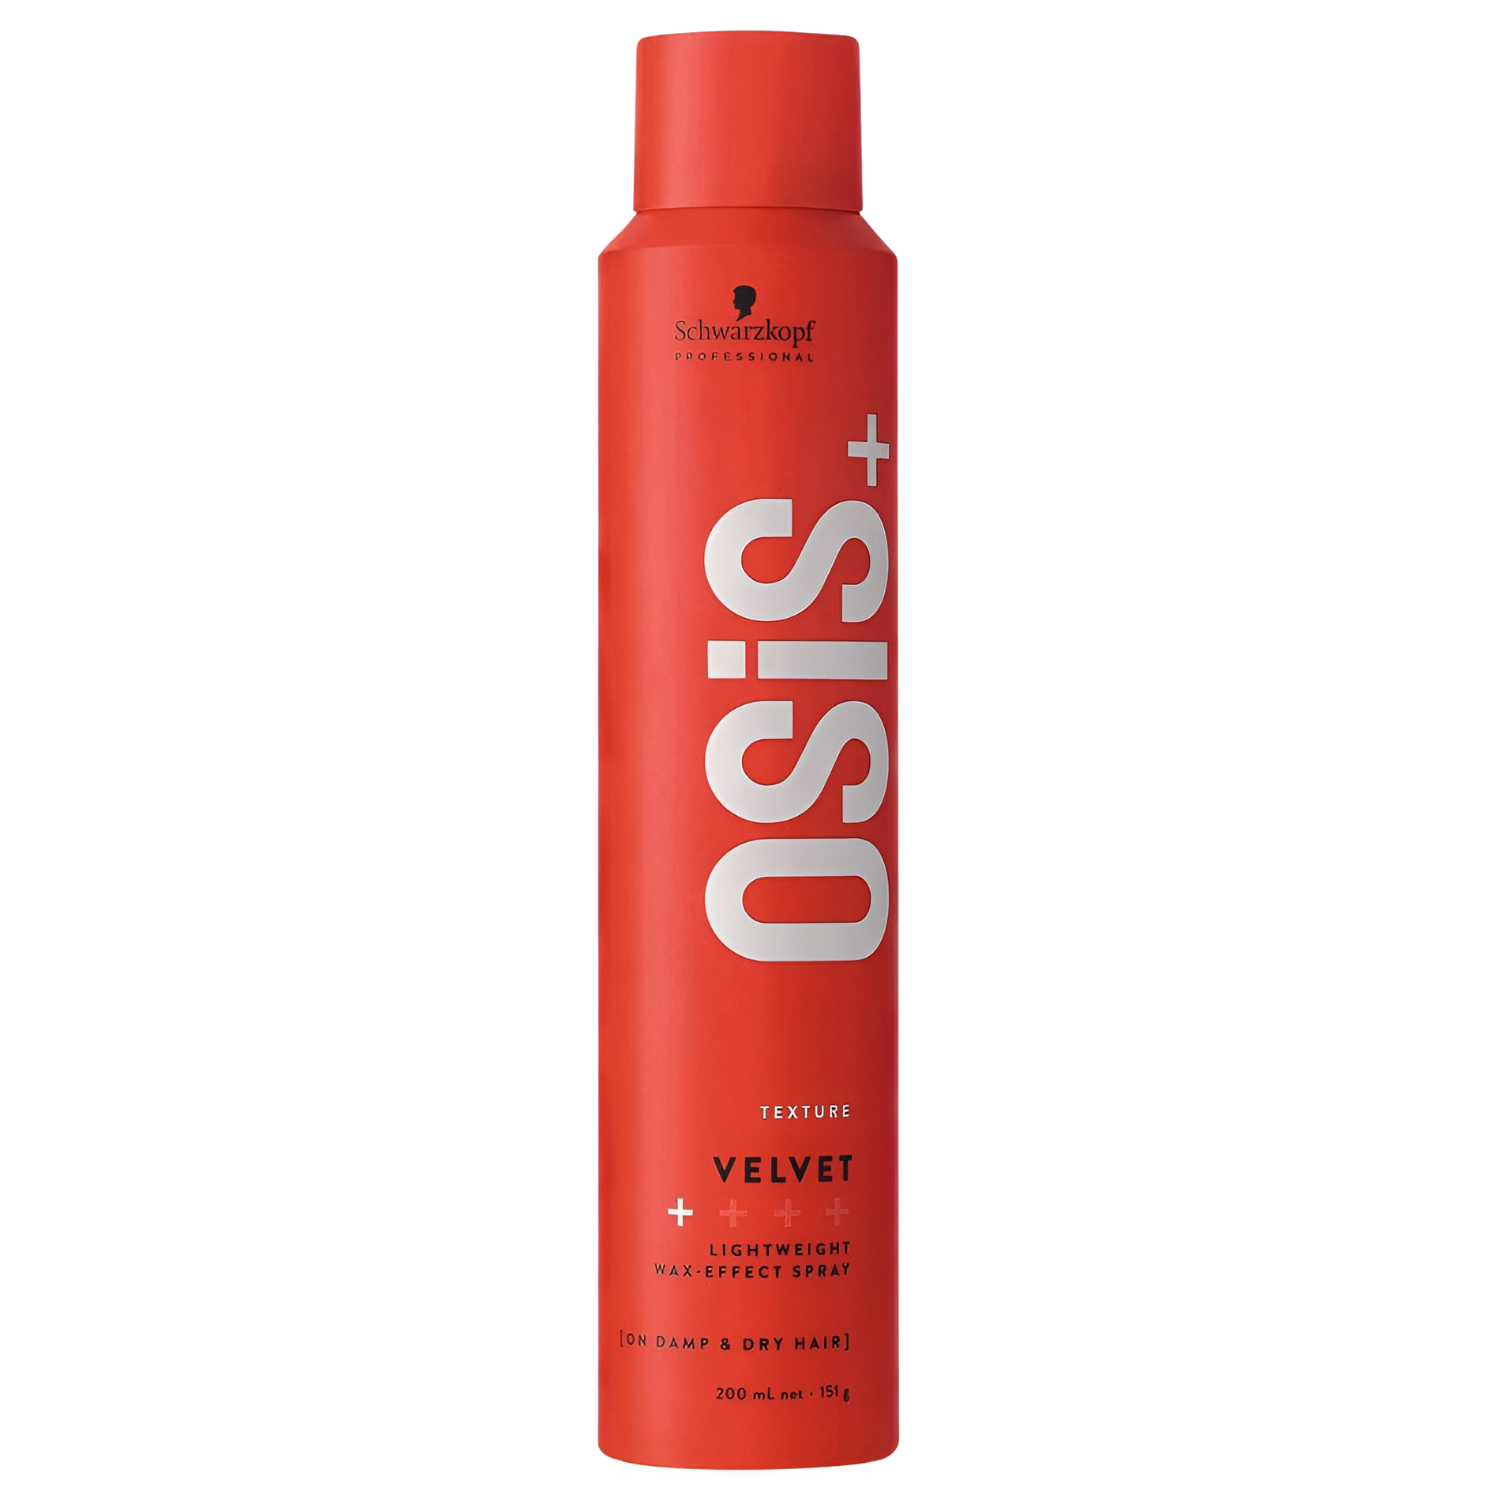 OSIS Velvet Lightweight Wax-Effect Spray